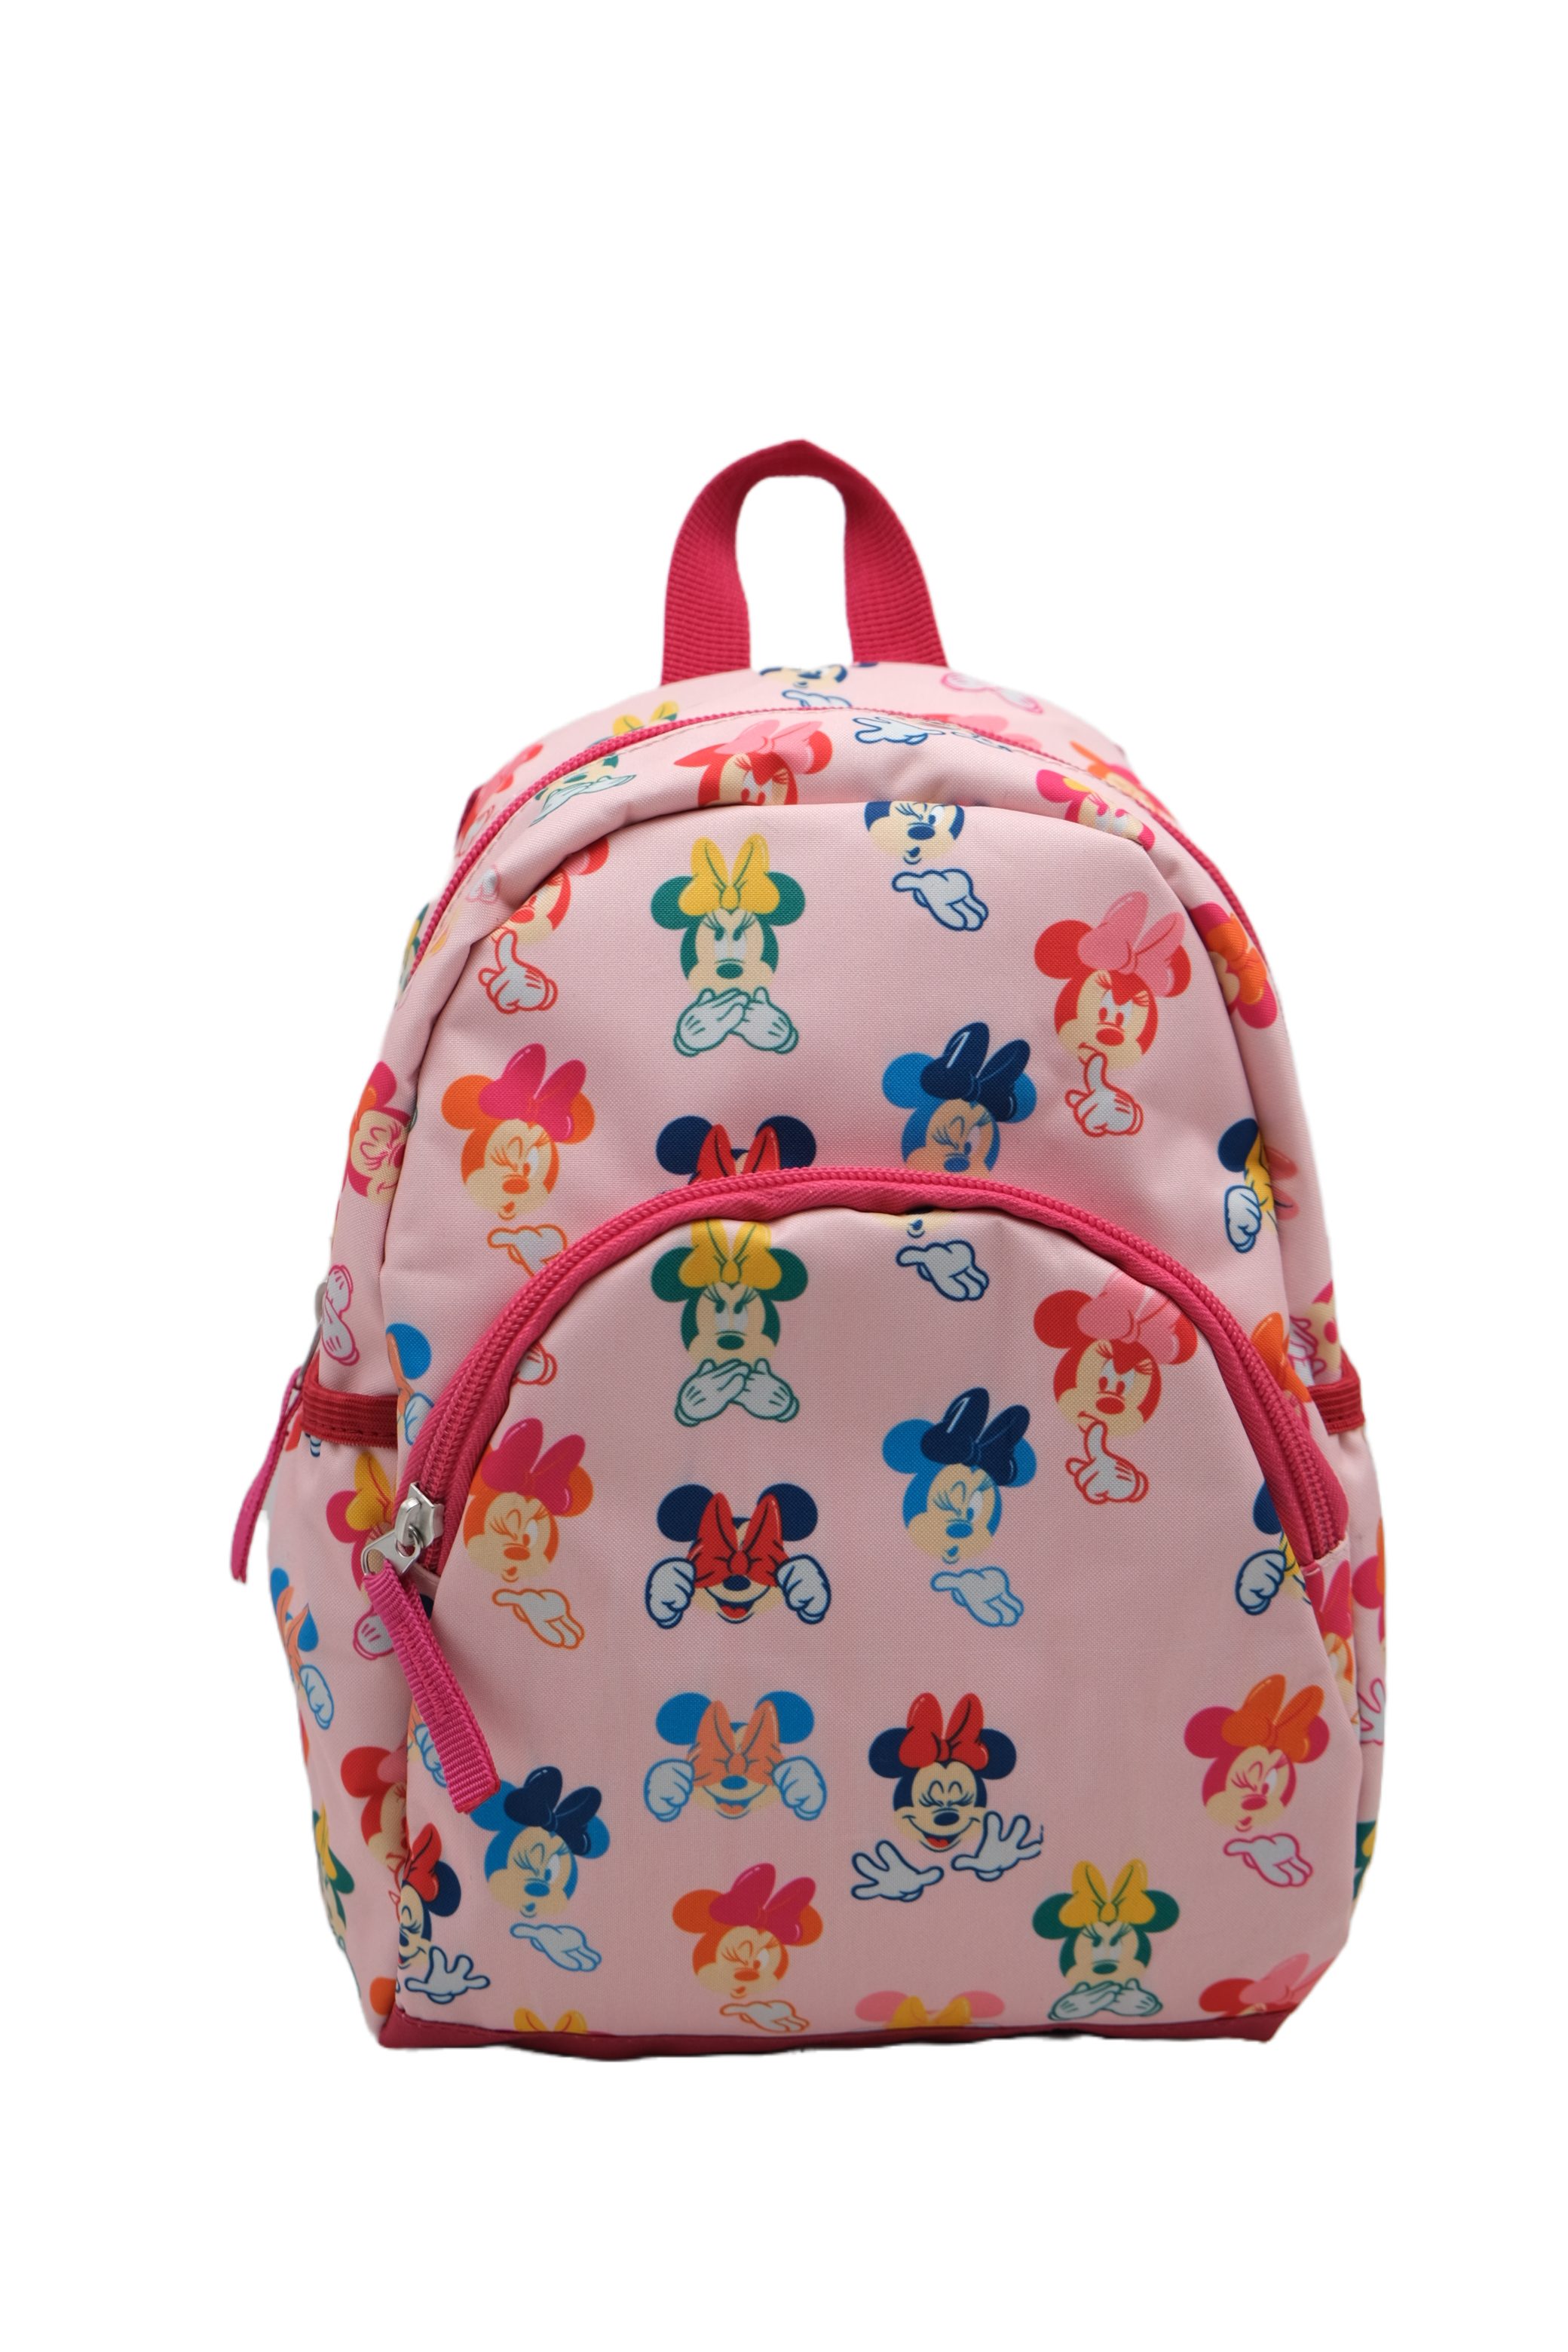 Disney Minnie Mouse Kinderrucksack Kindergartentasche Pink 30cm